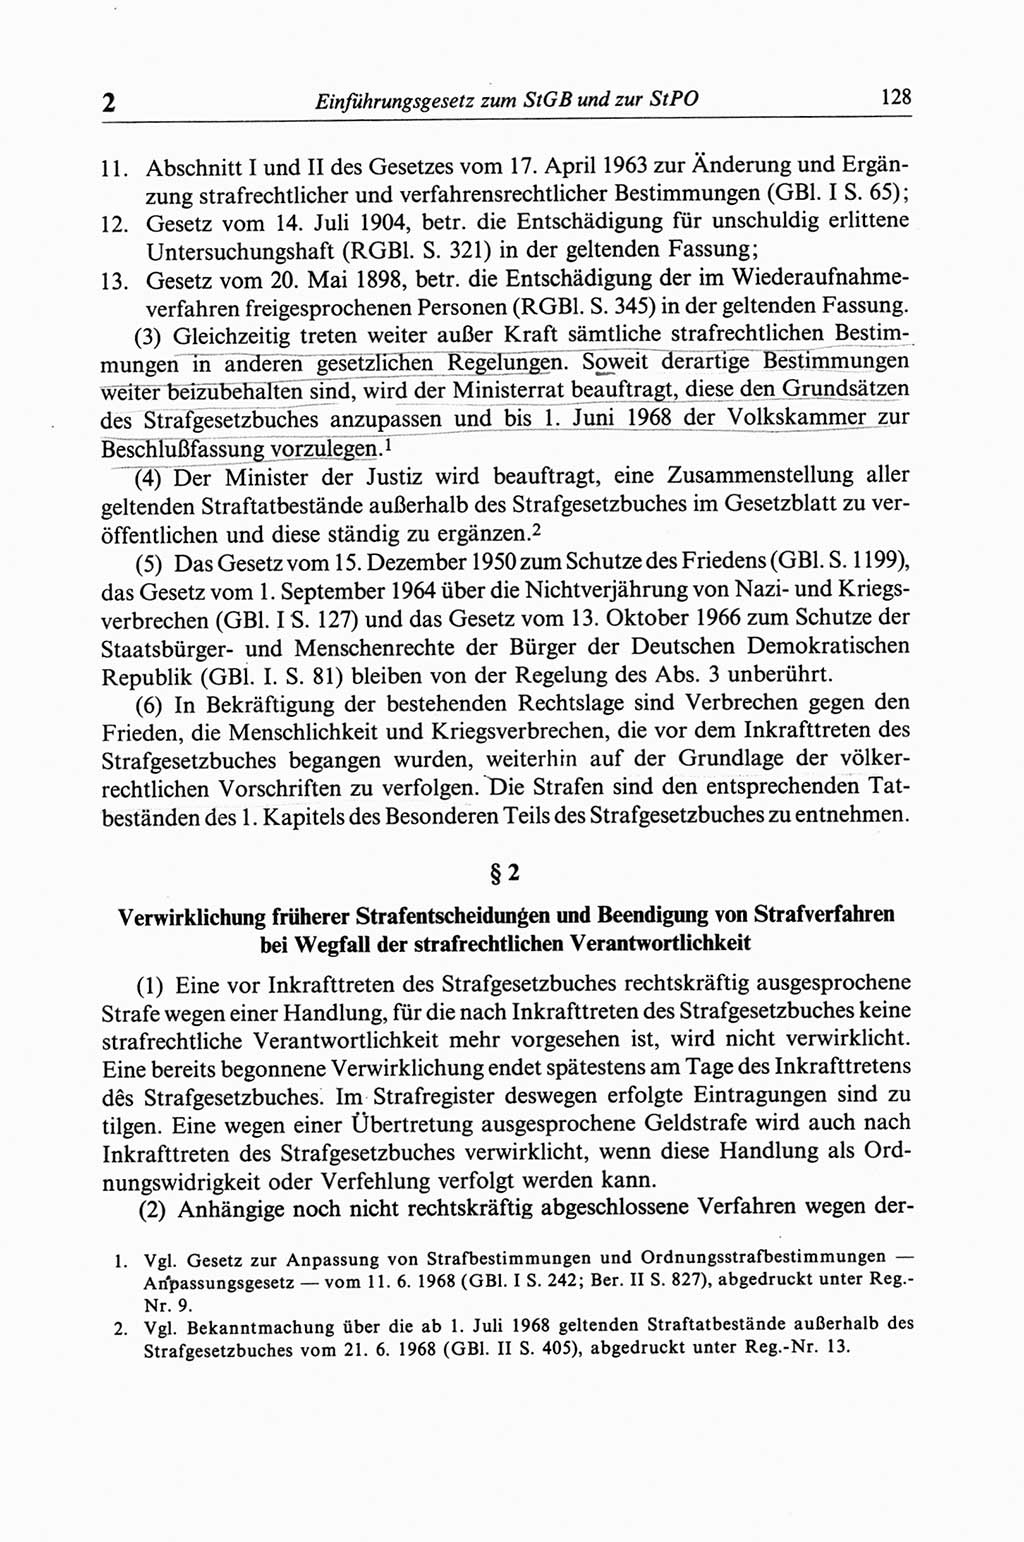 Strafgesetzbuch (StGB) der Deutschen Demokratischen Republik (DDR) und angrenzende Gesetze und Bestimmungen 1968, Seite 128 (StGB Ges. Best. DDR 1968, S. 128)